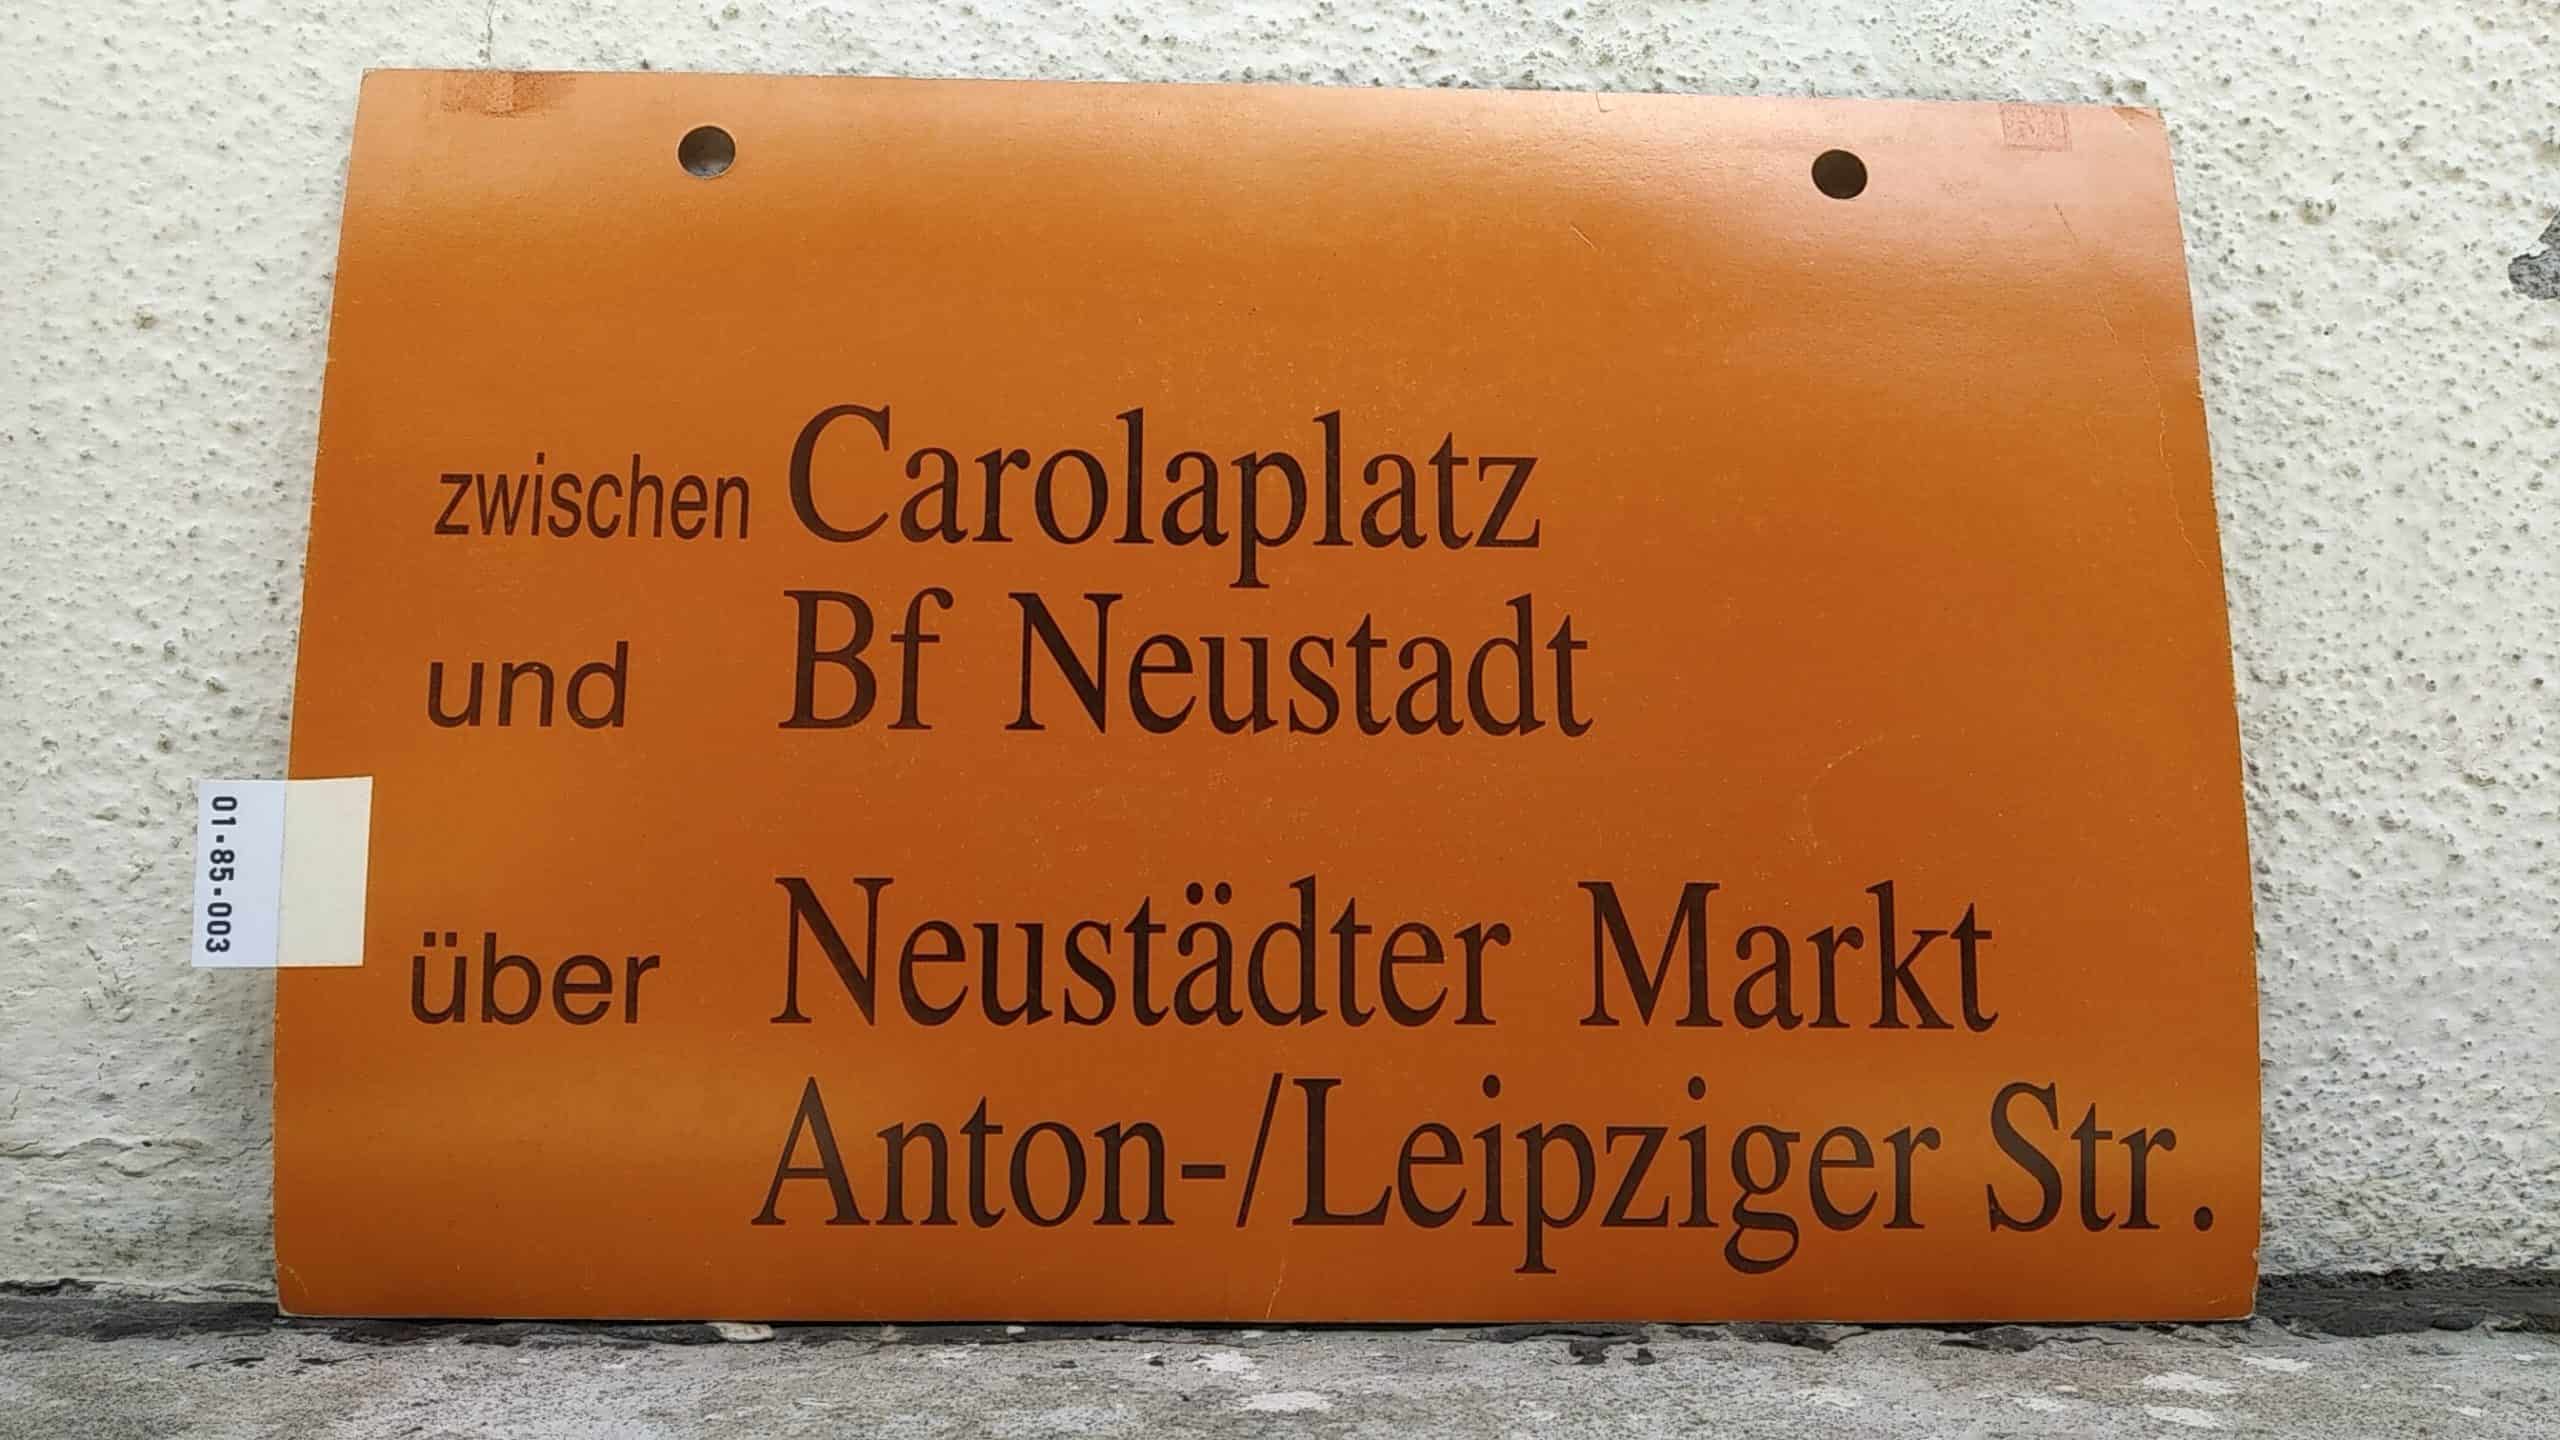 Ein seltenes Straßenbahn-Umleitungsschild aus Dresden: zwischen Carolaplatz und Bf Neustadt über Neustädter Markt Anton-/Leipziger Str.